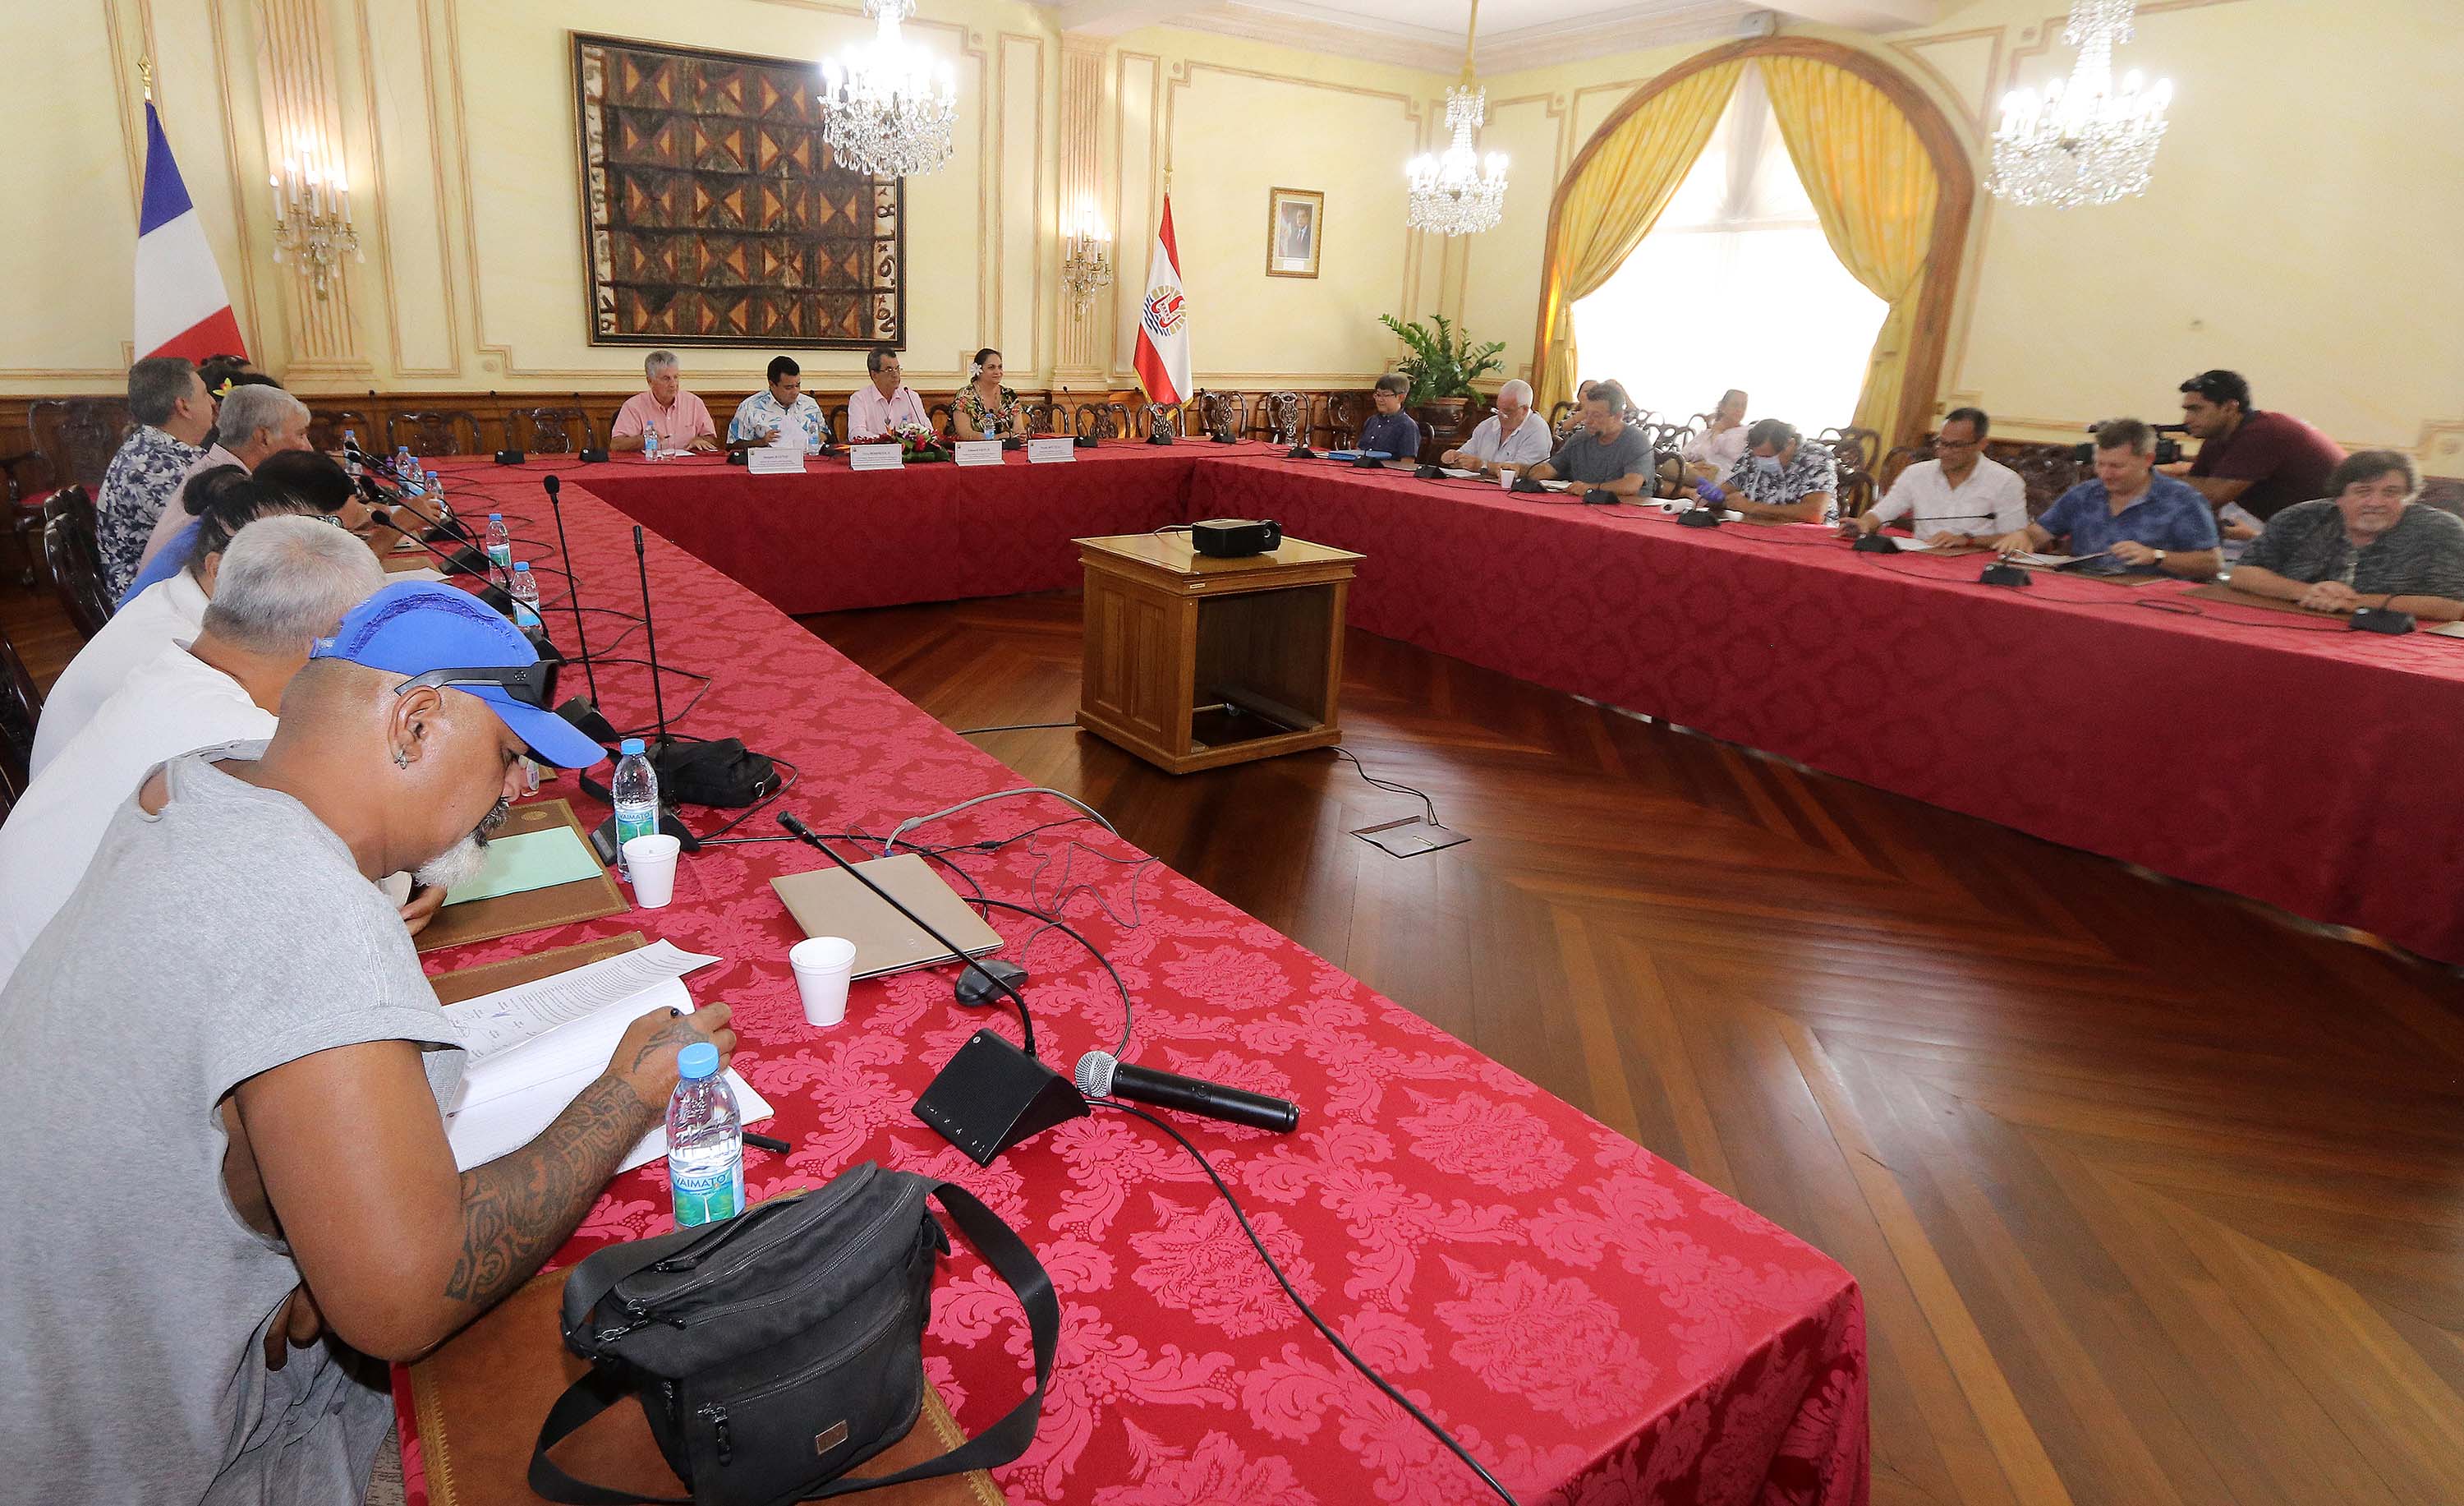 Covid-19 : La Polynésie annonce un plan de sauvegarde économique